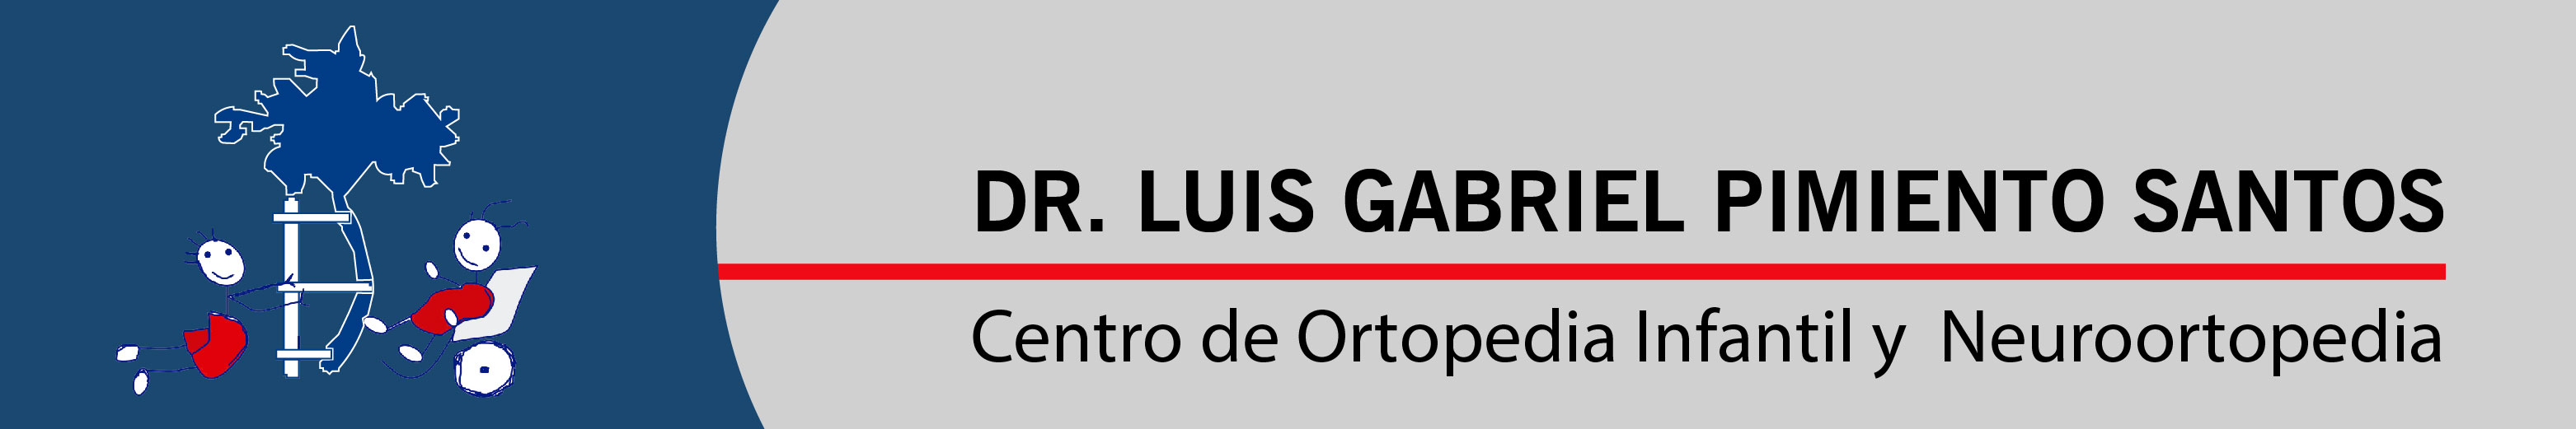 Dr Luis Gabriel Pimiento